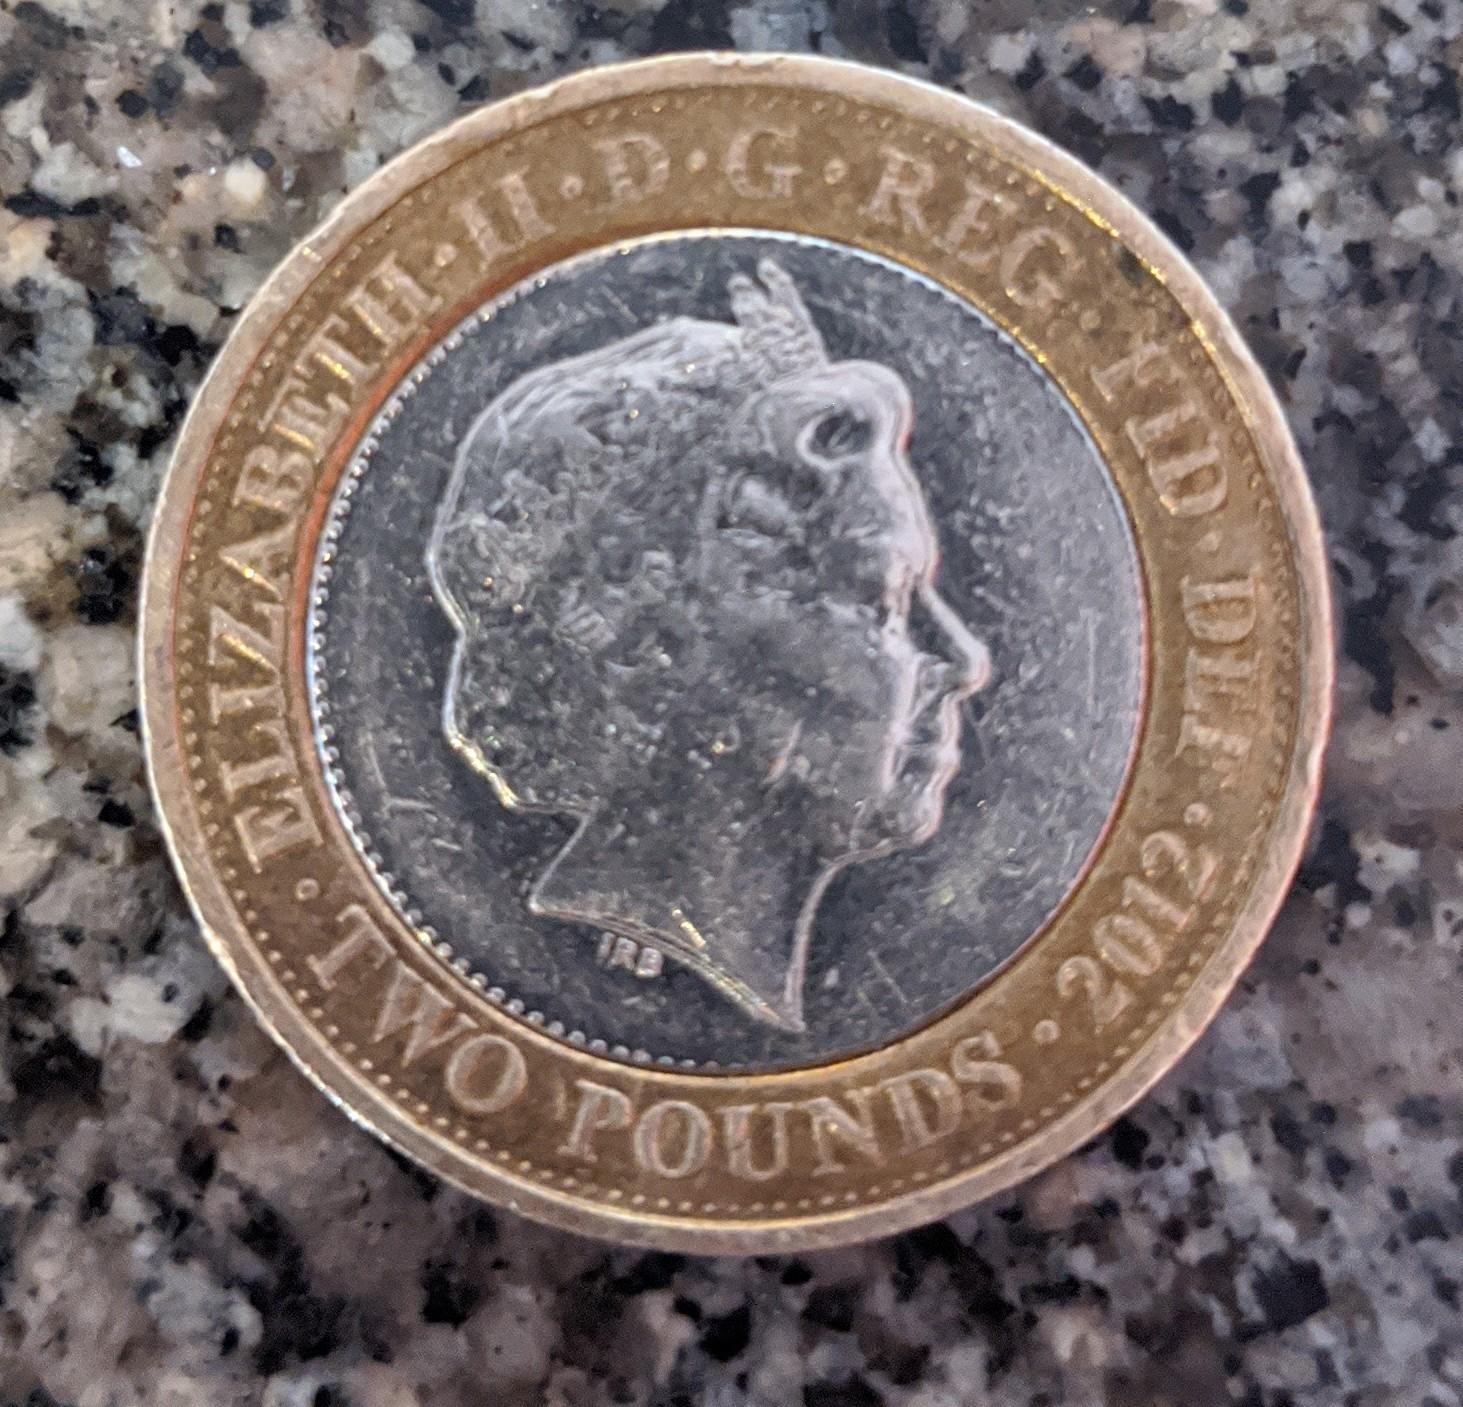 Rare £2 coins 